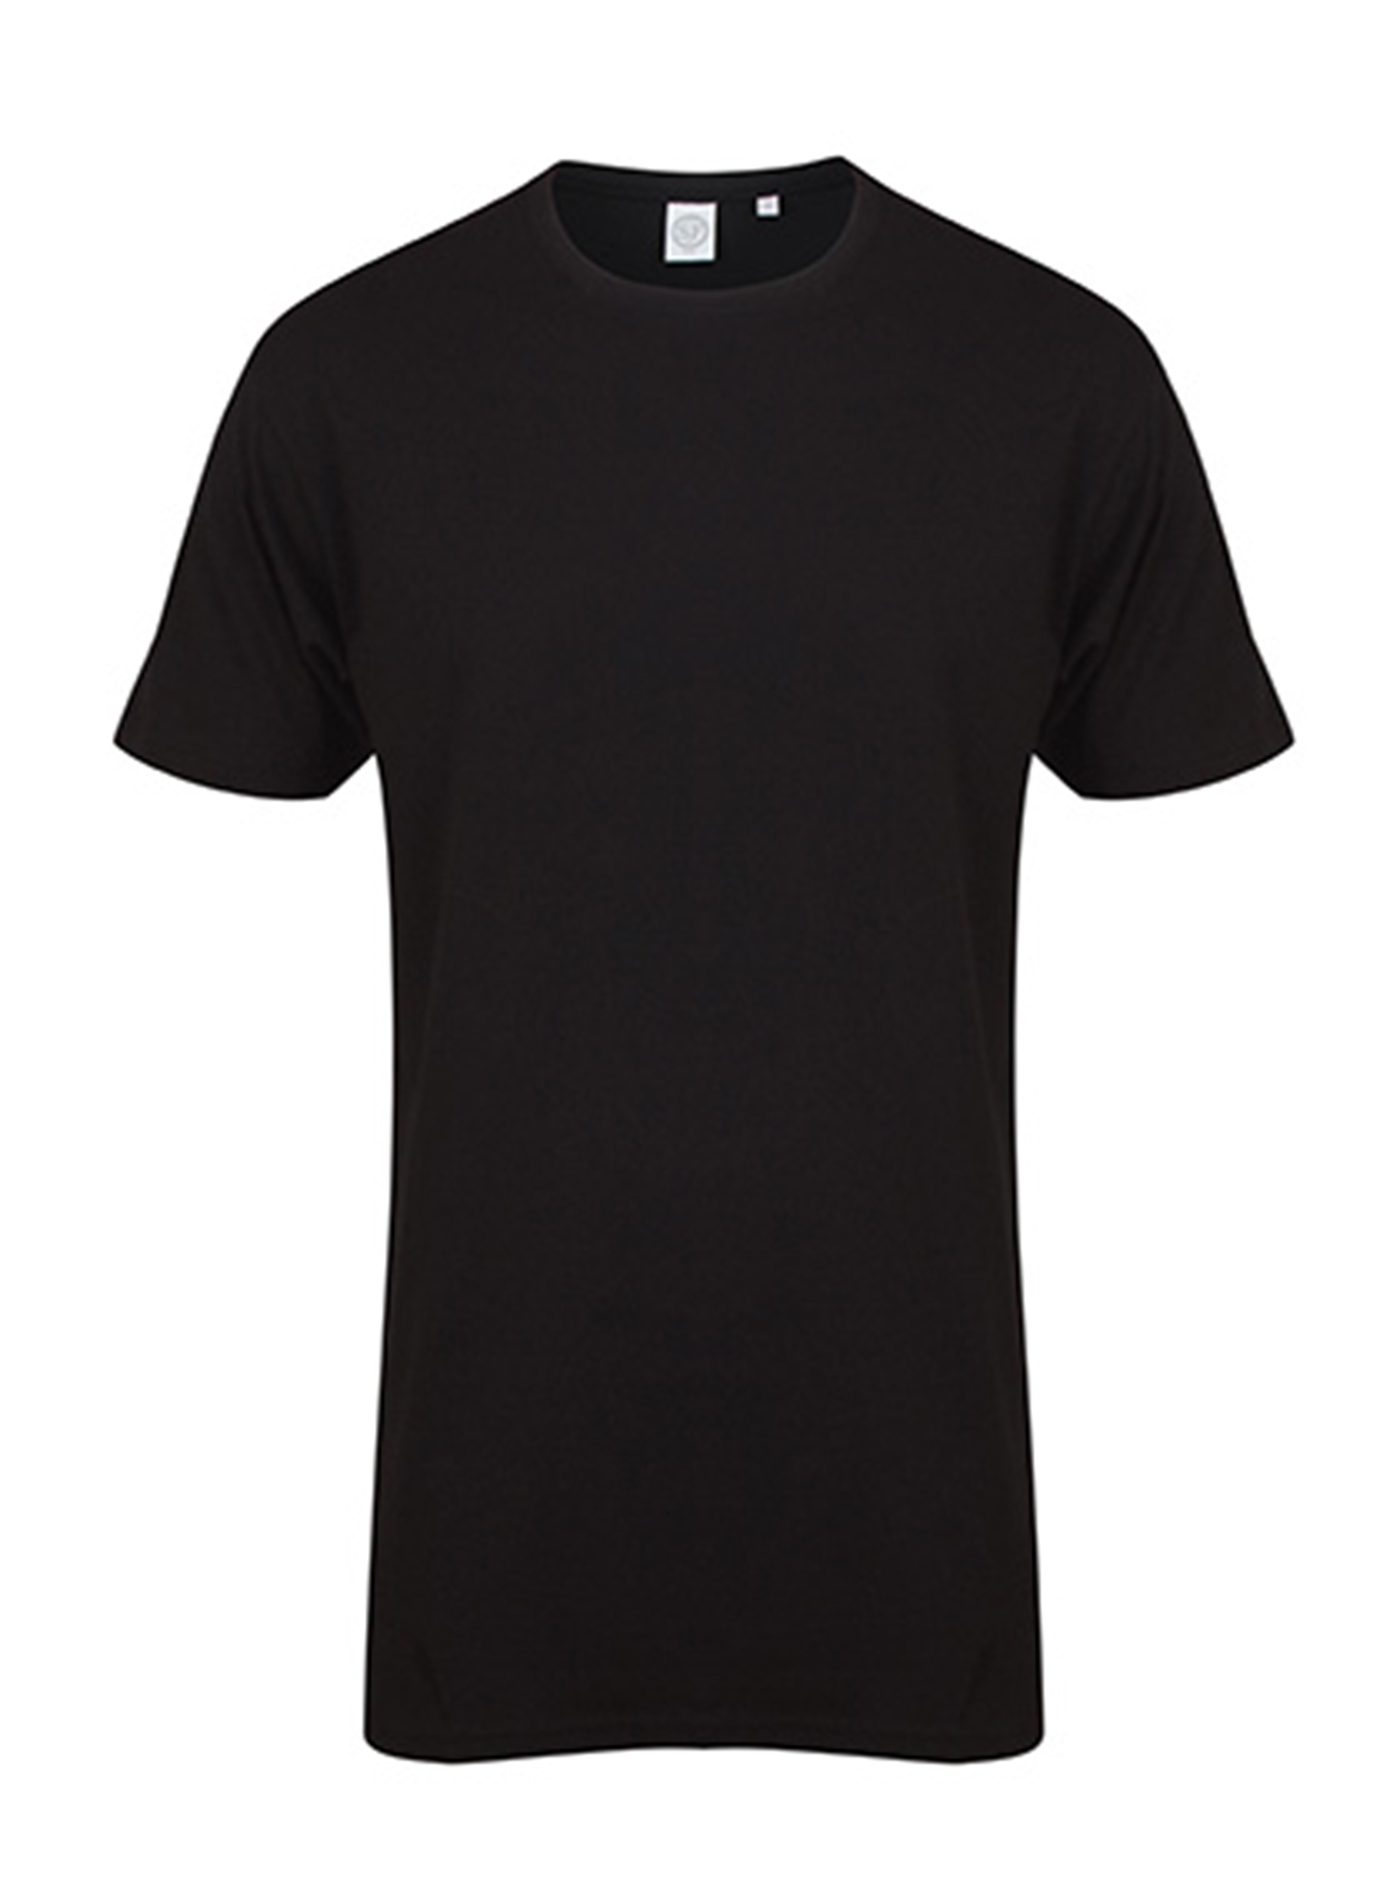 Pánské tričko s prodlouženým zadním dílem Skinnifit Longline T - černá XL